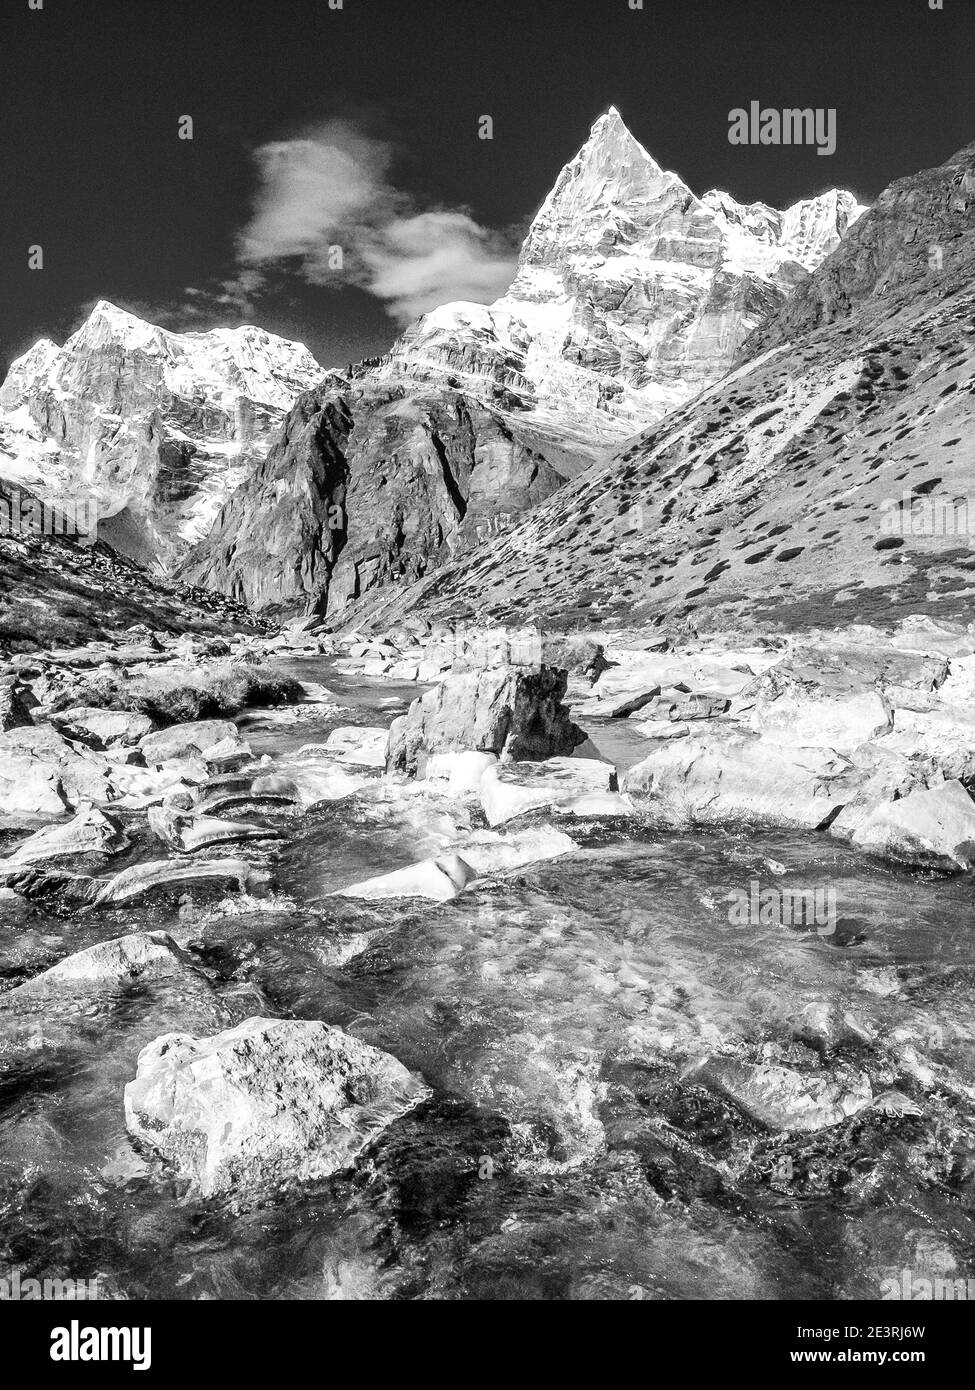 Népal. Montagnes de l'Himalaya en monochrome dans le parc national de Sagarmatha de la vallée de Solu Khumbu du mont Everest au Népal, avec l'un des nombreux sommets sans nom vu en route vers le mont Mera. Banque D'Images